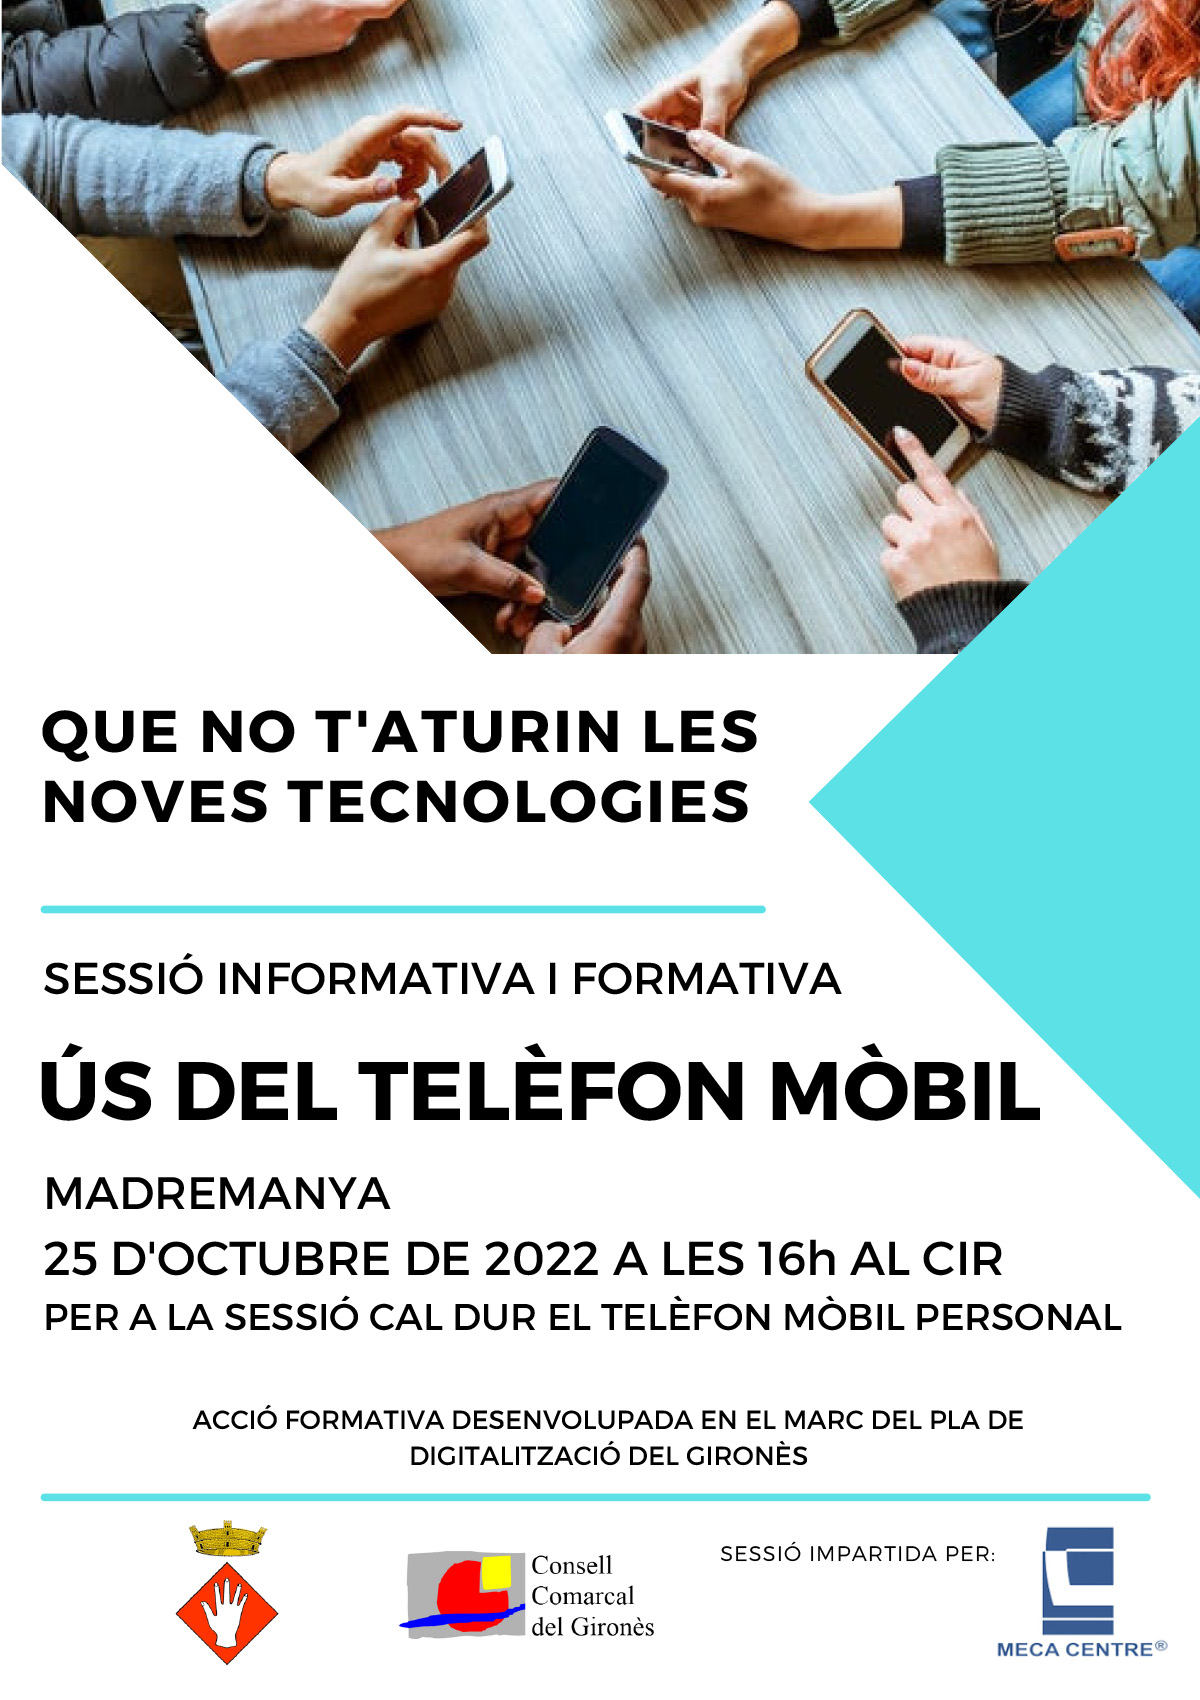 ÚS DEL TELÈFON MÒBIL - MADREMANYA